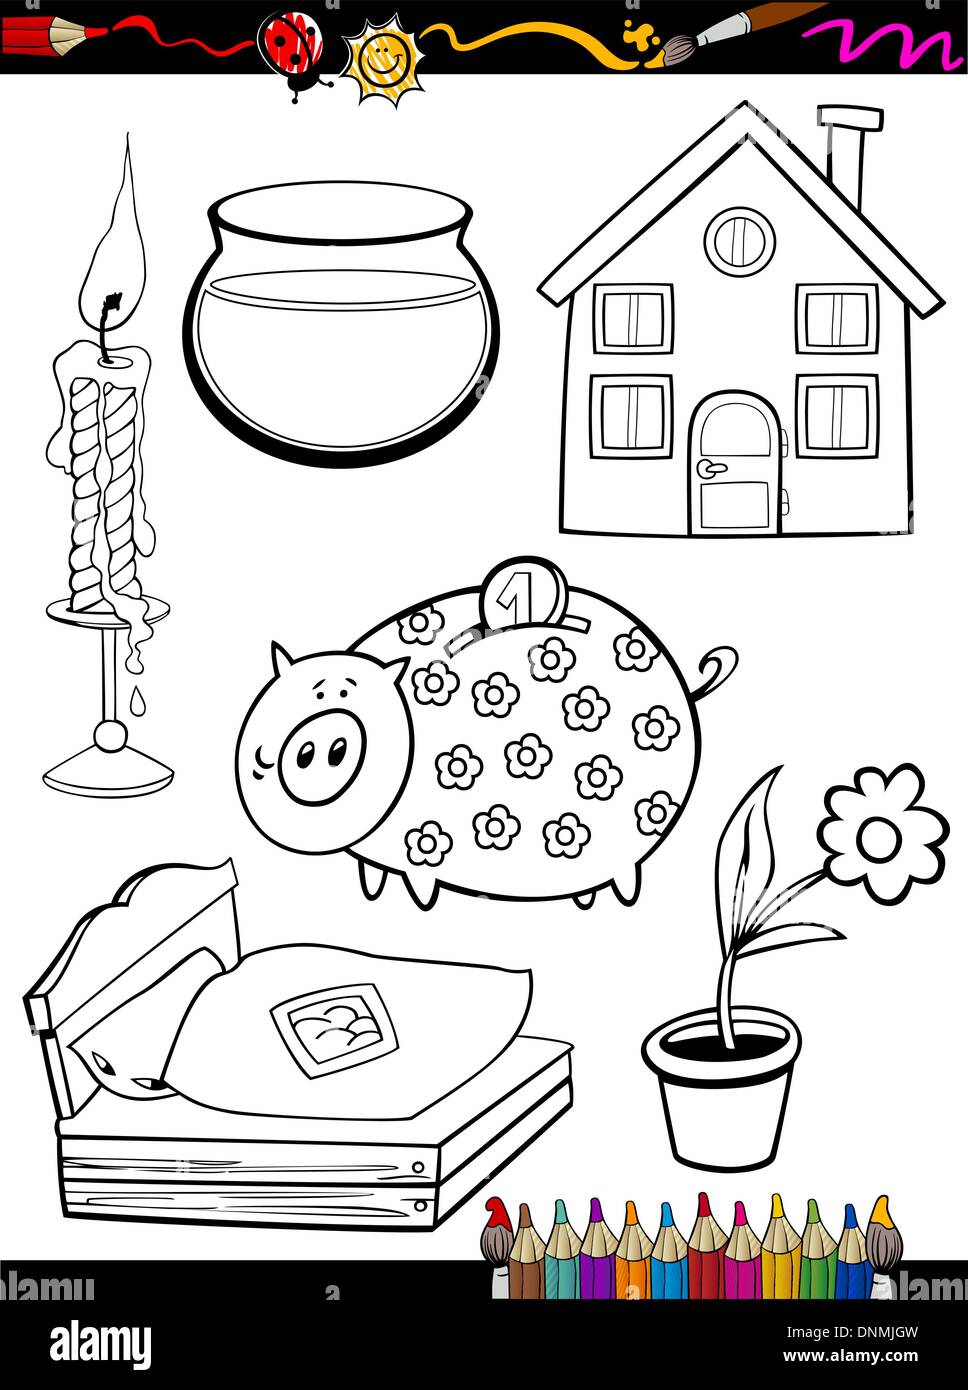 Libro para colorear la ilustración de dibujos animados o página de inicio en blanco y negro los objetos configurados para la educación de los niños Ilustración del Vector